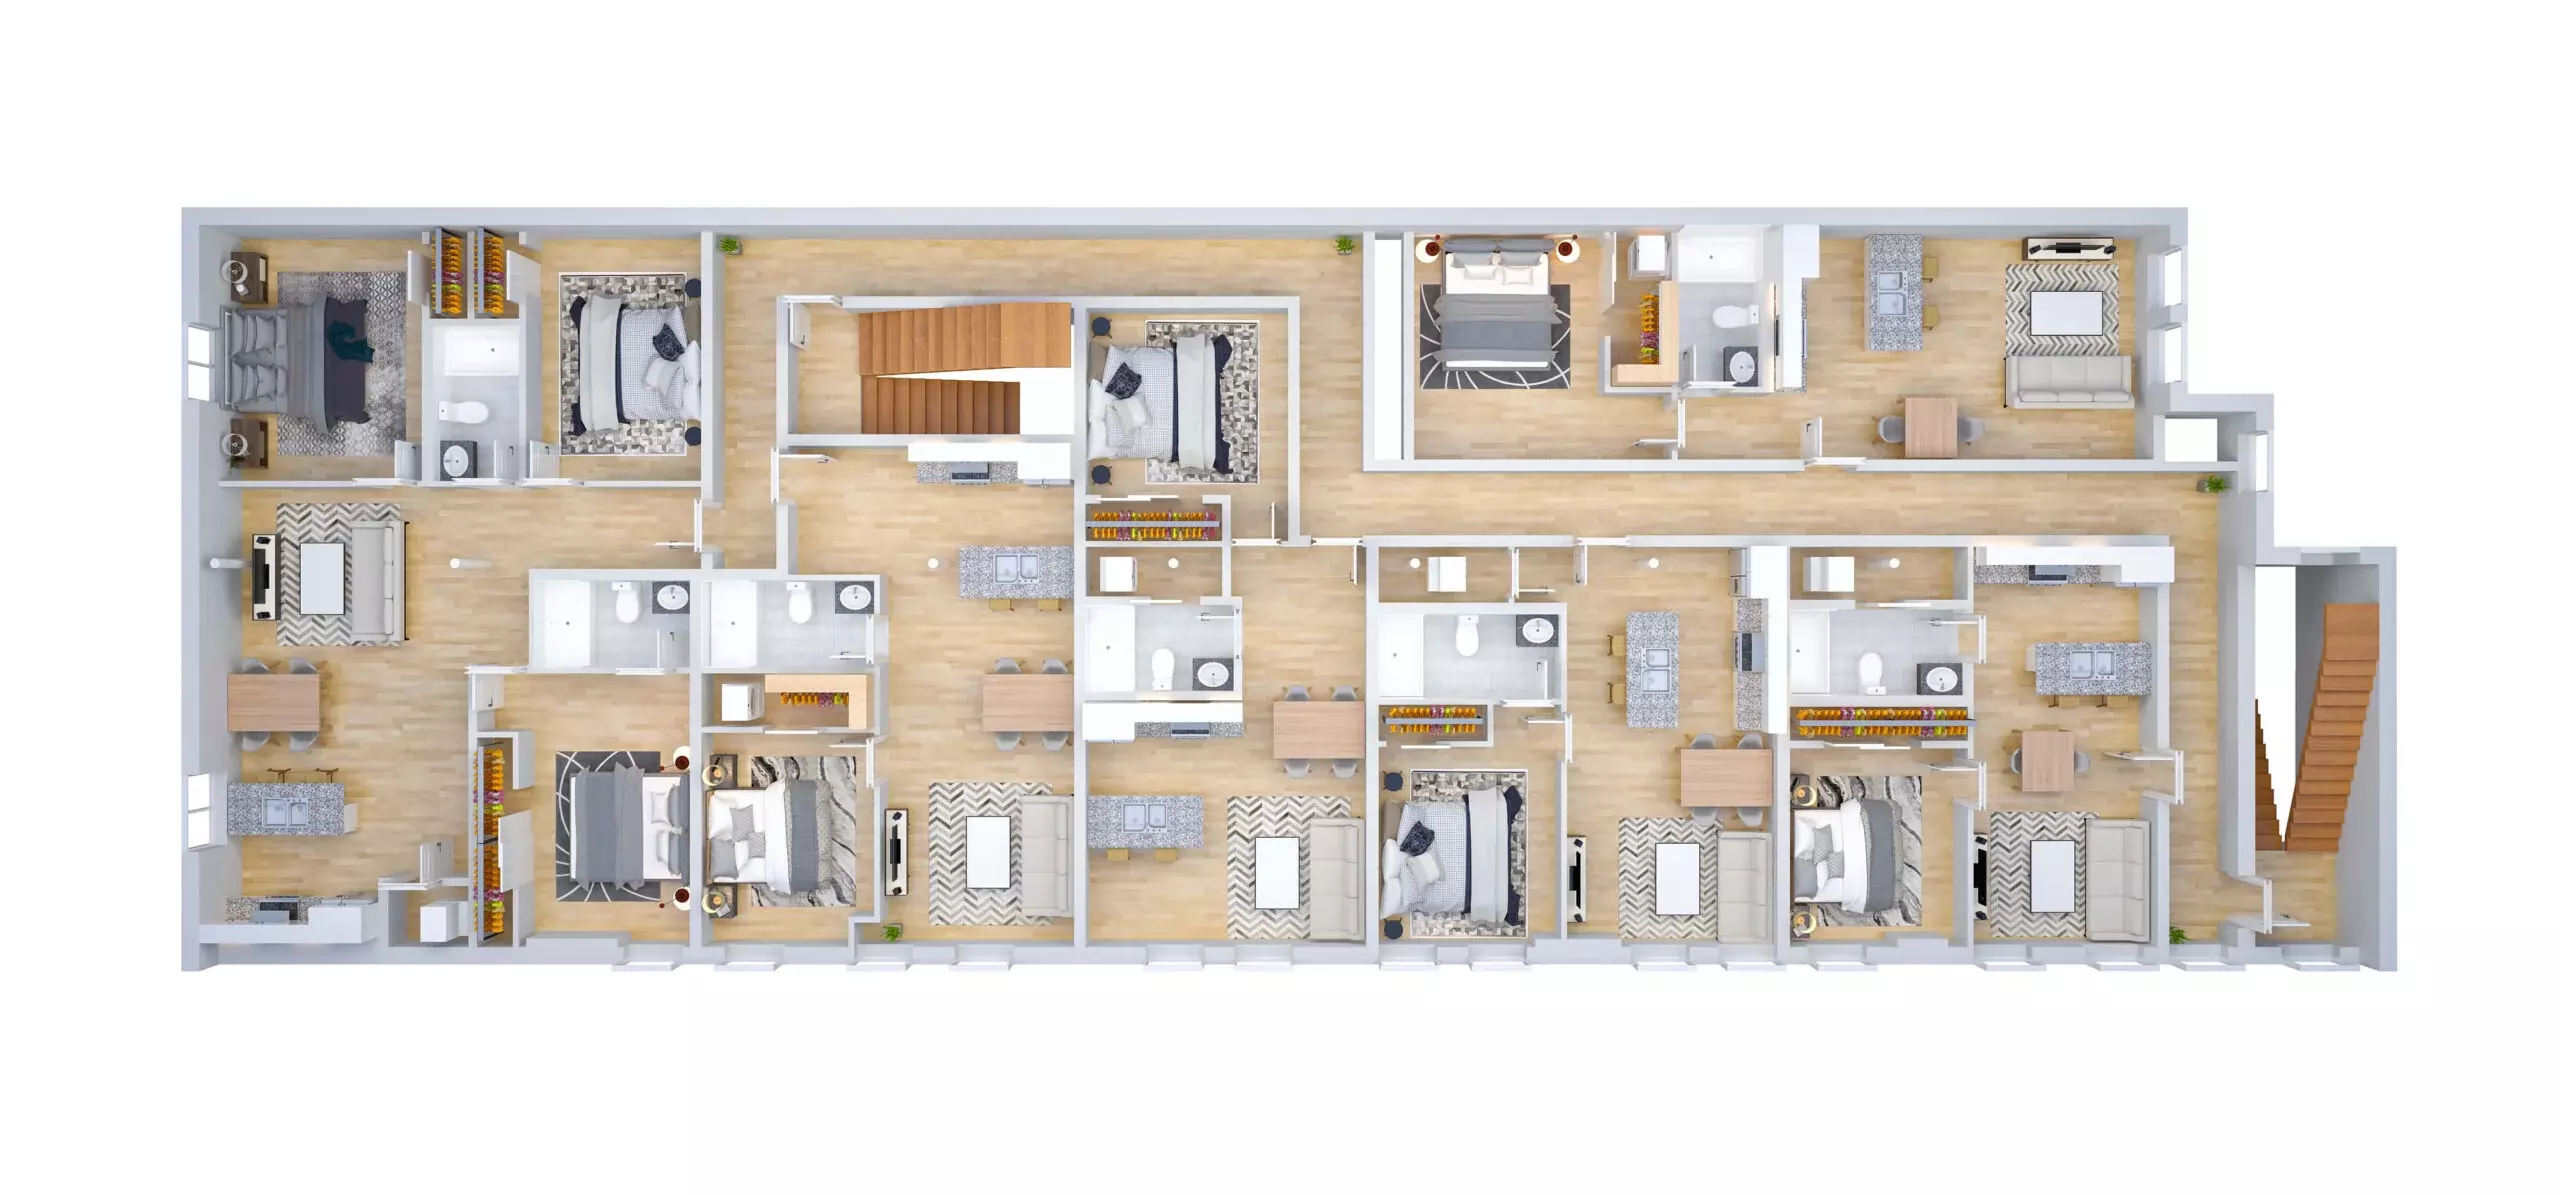 Floor-Plans-for-Commercial-Properties